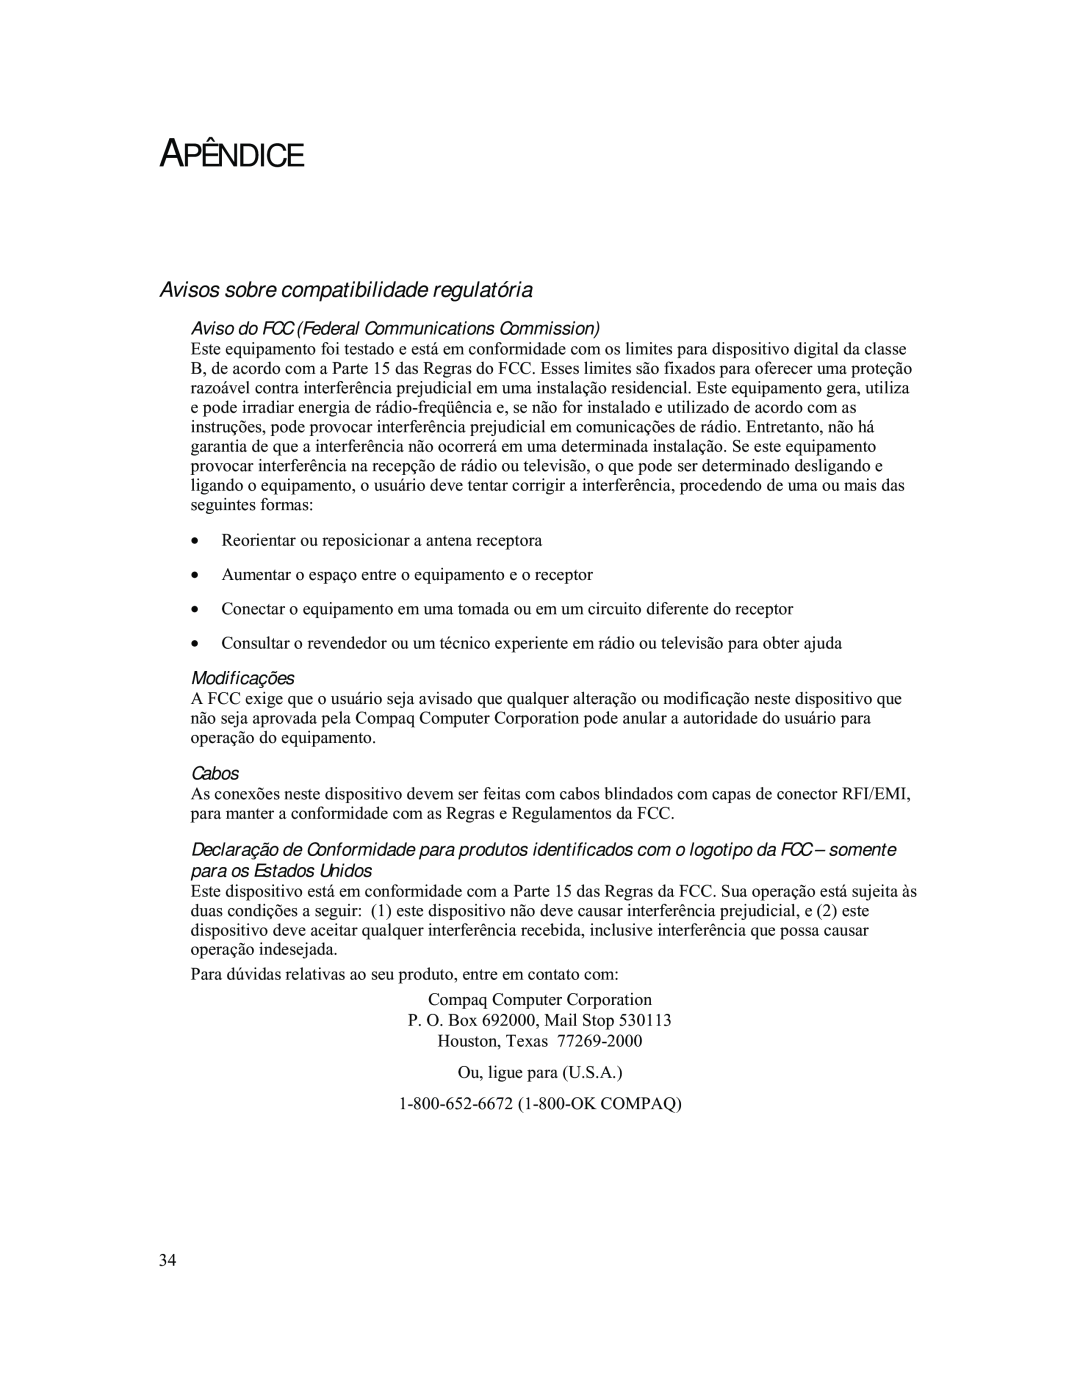 Compaq 740 manual Apêndice, Avisos sobre compatibilidade regulatória, Aviso do FCC Federal Communications Commission, Cabos 